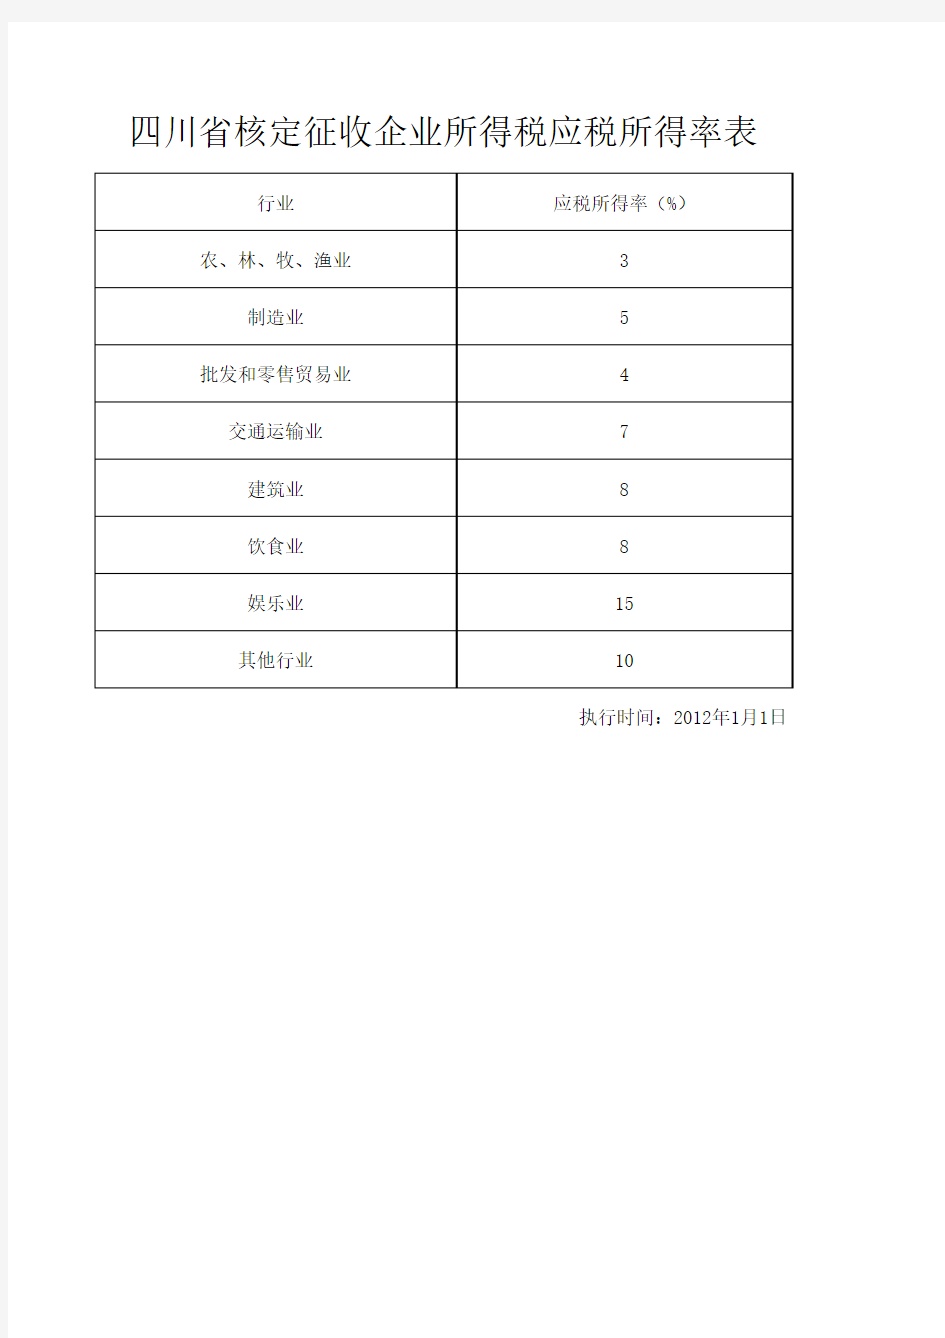 2012年1月1日起执行四川省核定征收企业所得税应税所得率表